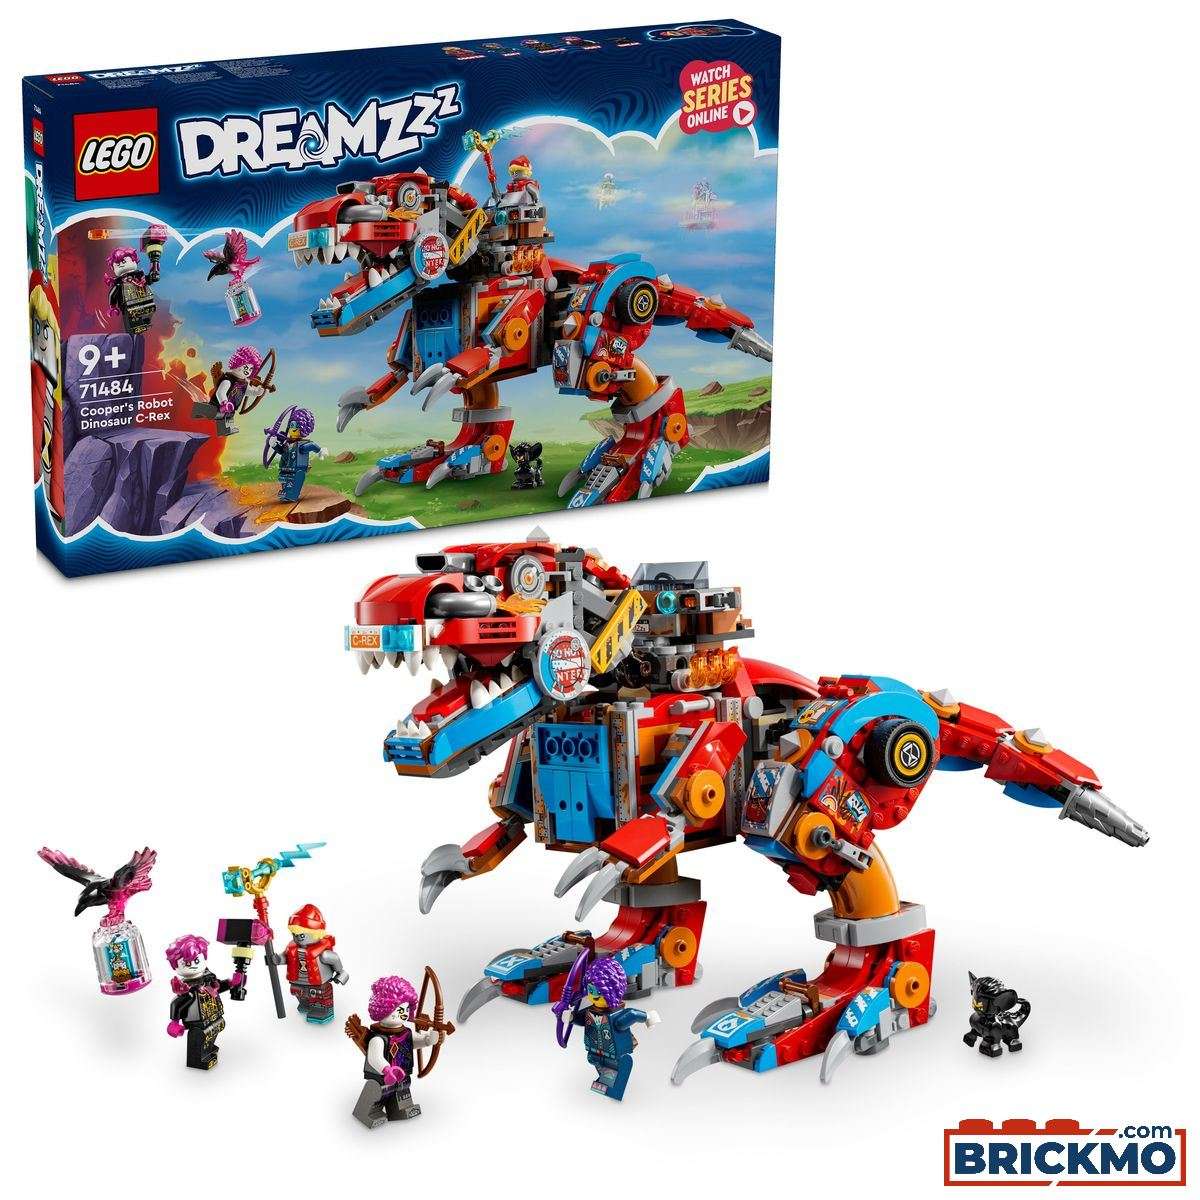 LEGO DreamZzz 71484 Dinosaurio Robot C-Rex de Cooper 71484